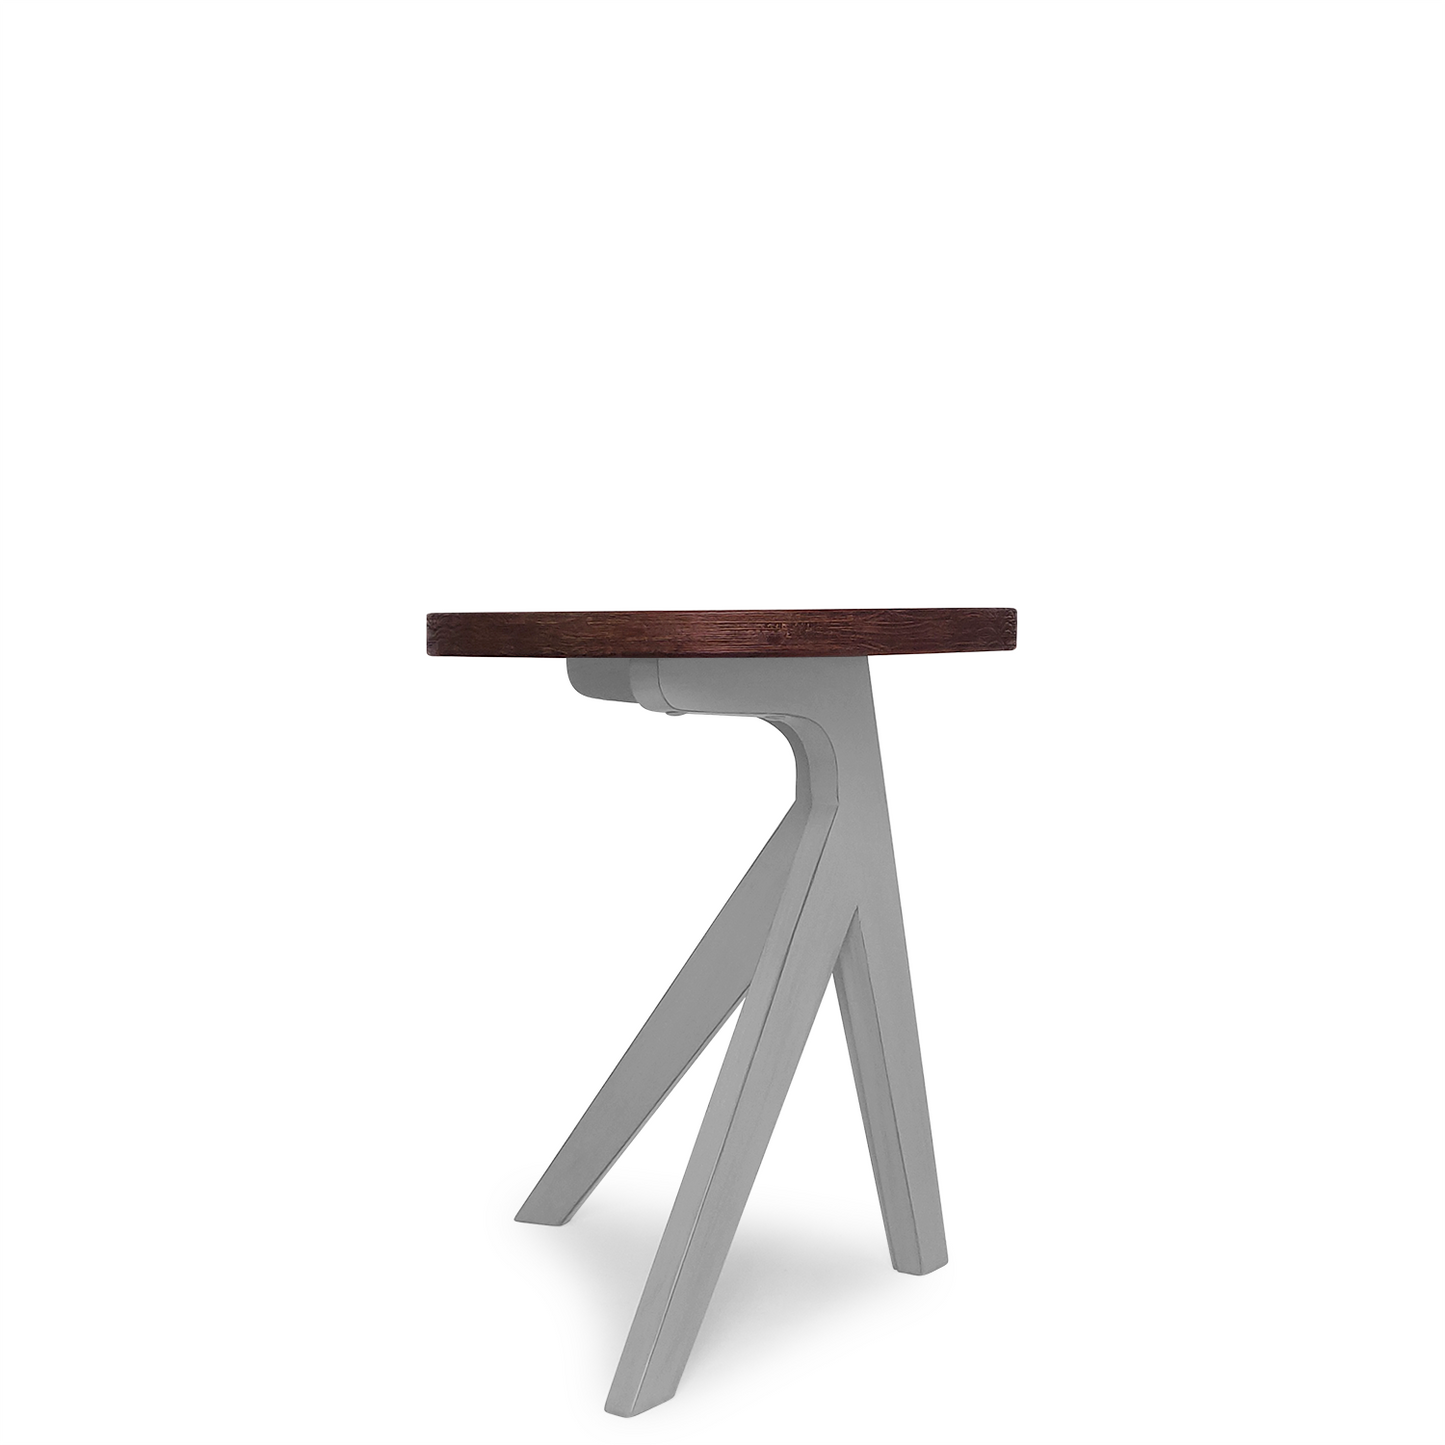 Unique Design Minimalist Vintage End Table, Brown, 20"x20"x23.6"